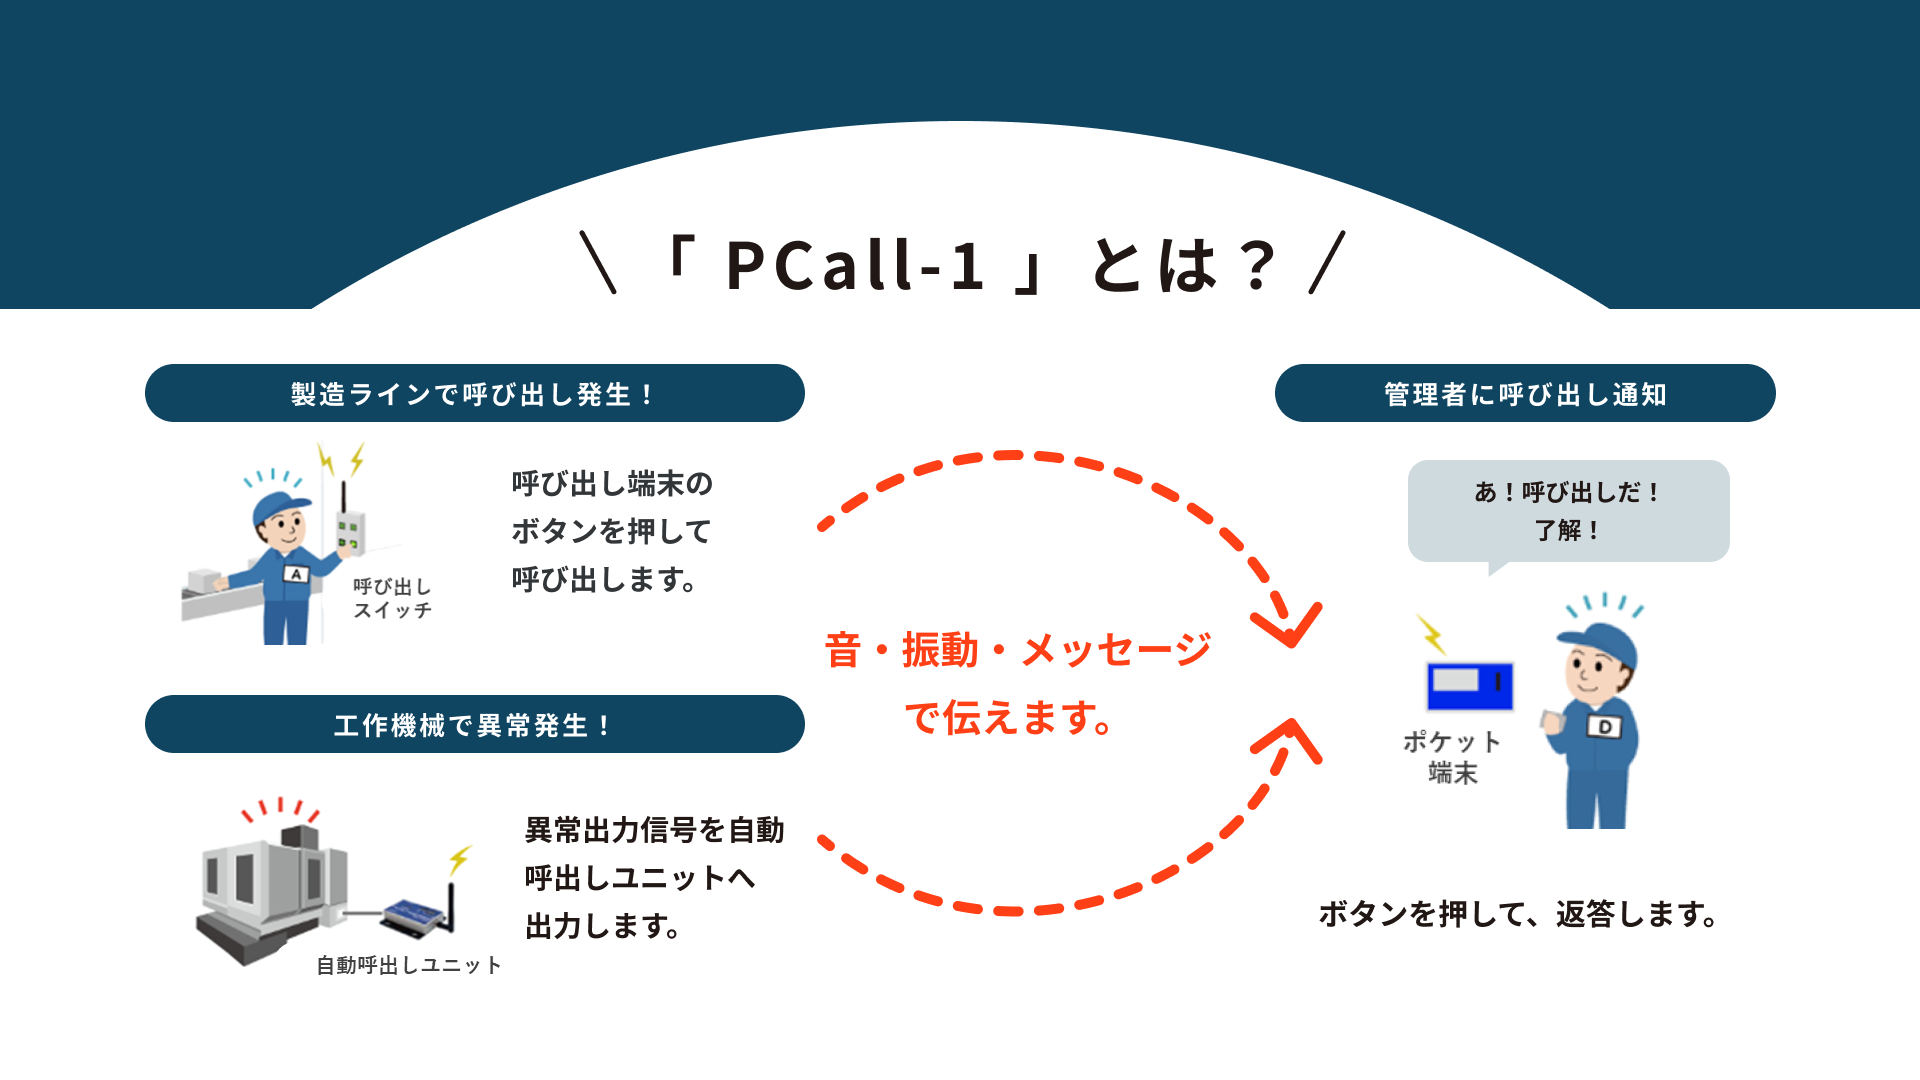 構内ポケベルシステム「 PCall-1 」